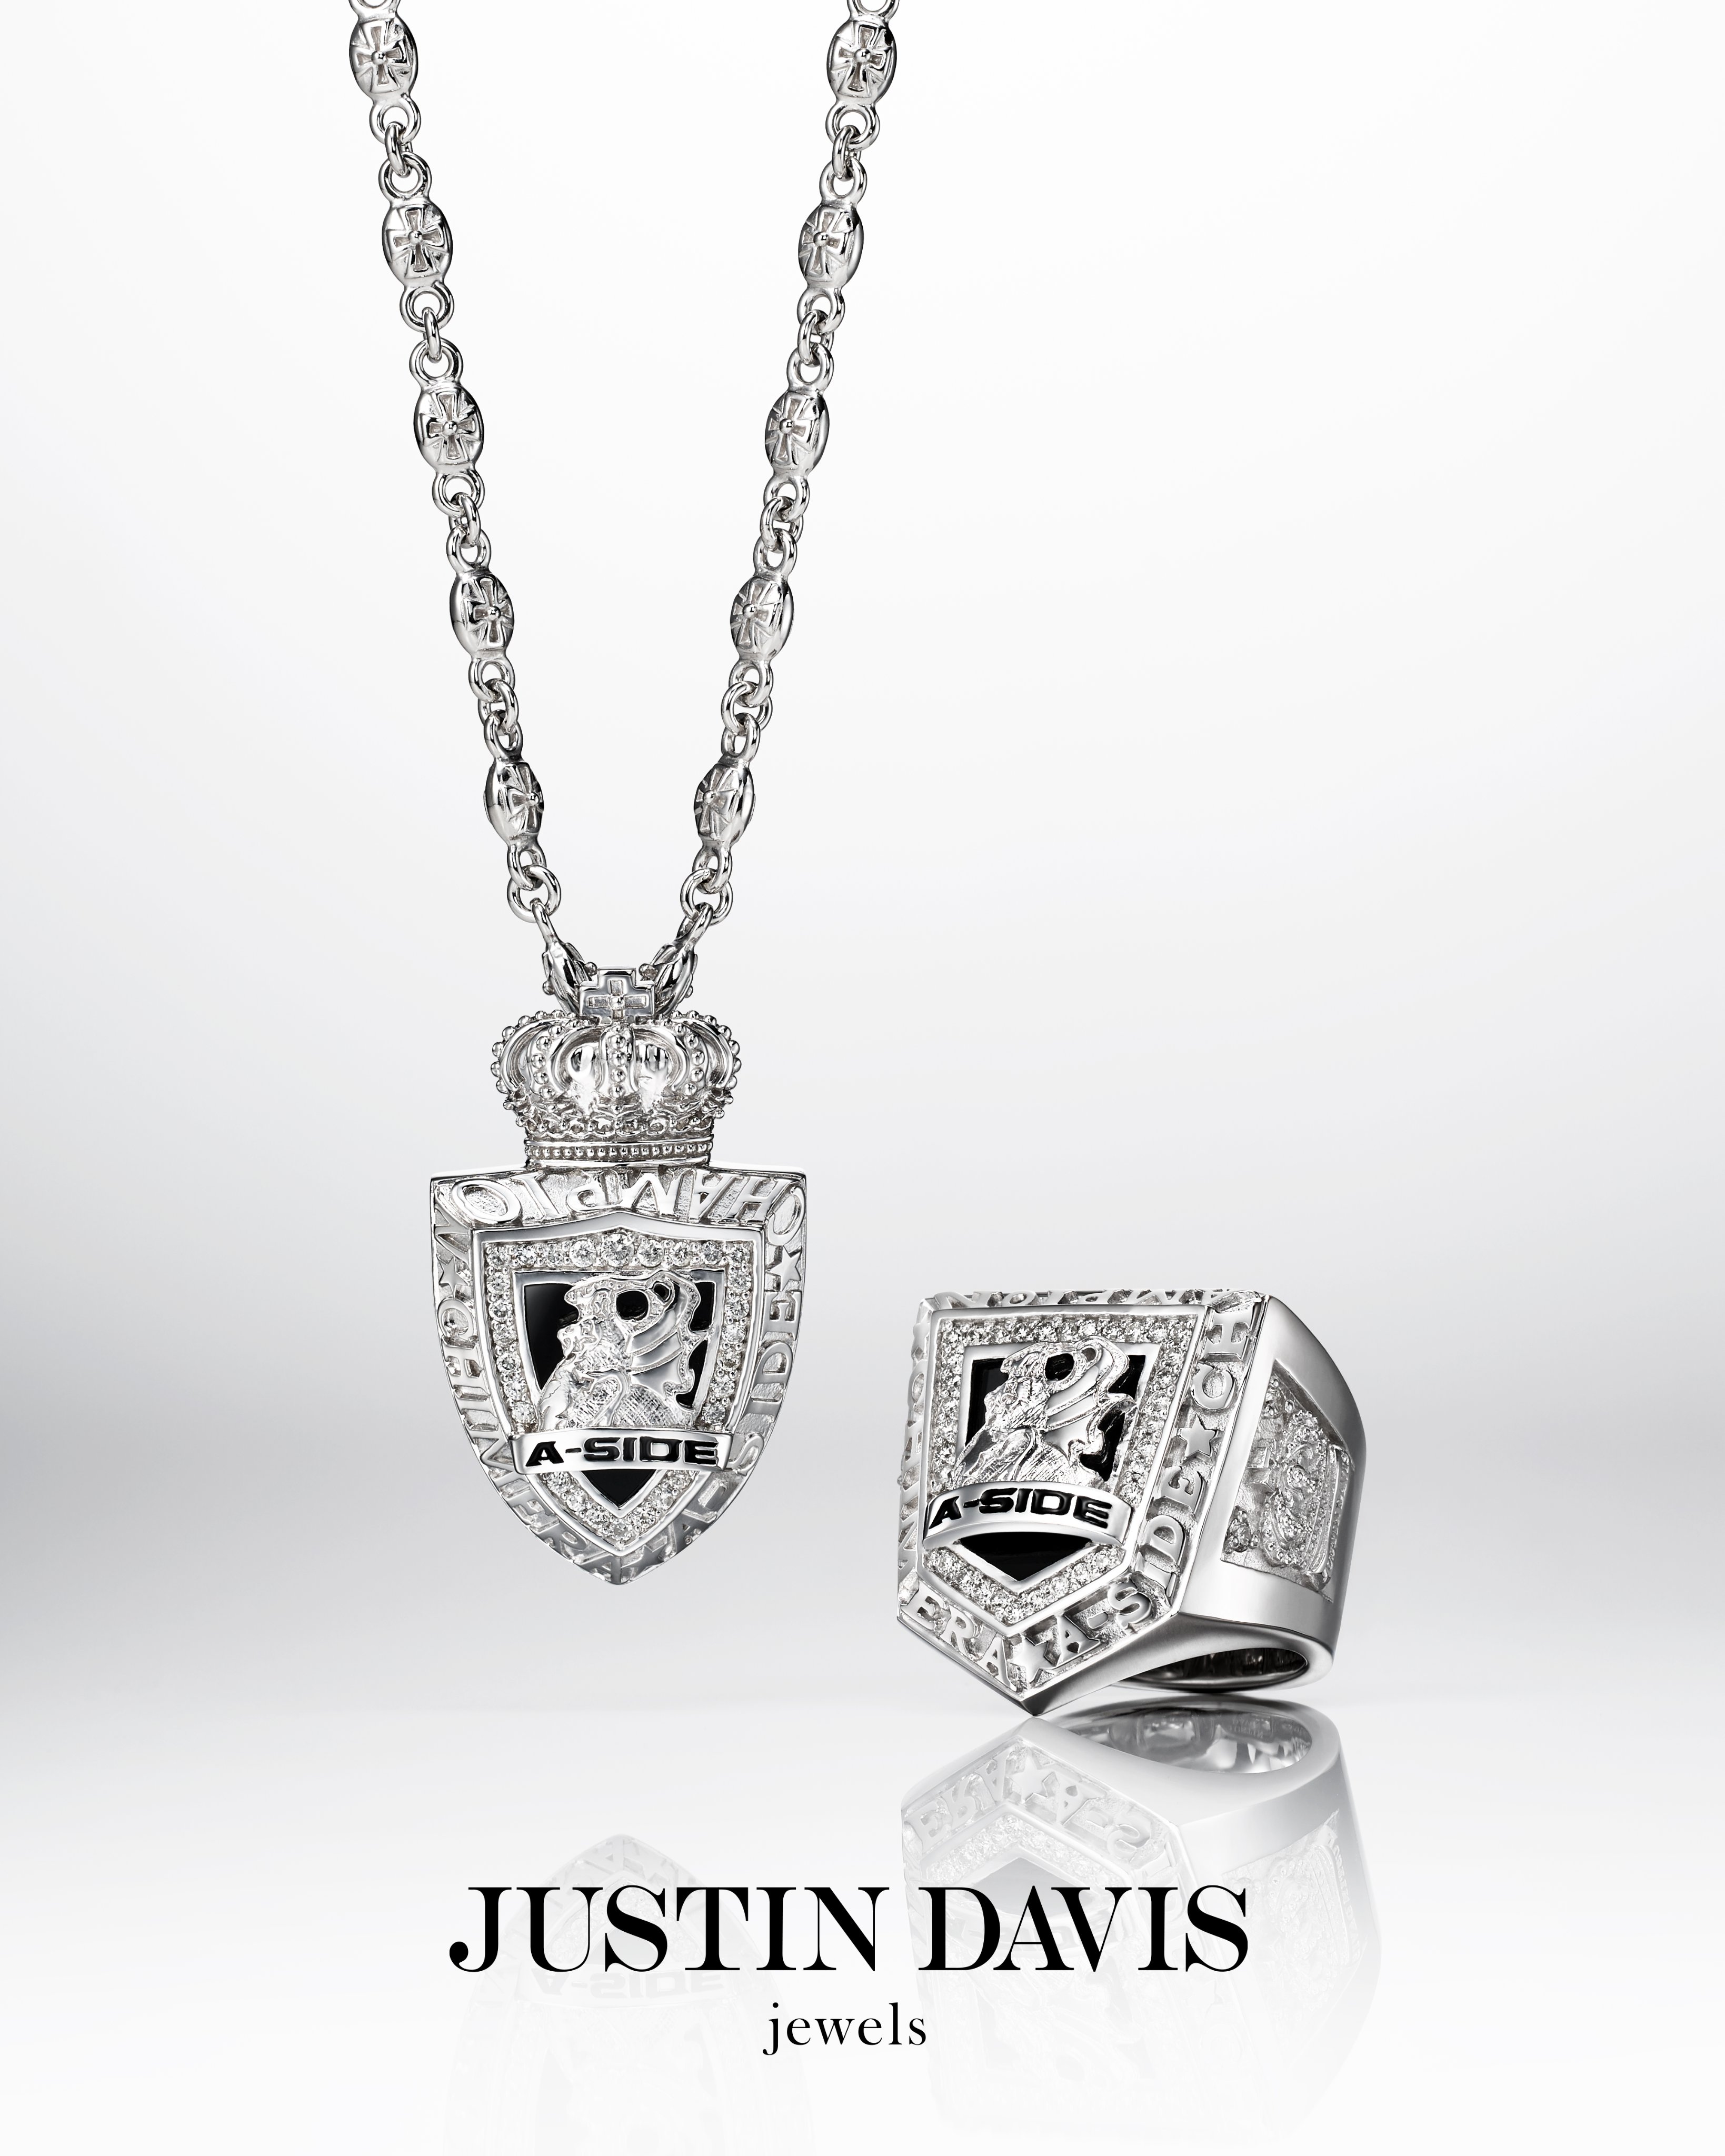 JUSTIN DAVIS jewels (@JustinDavis_) / Twitter